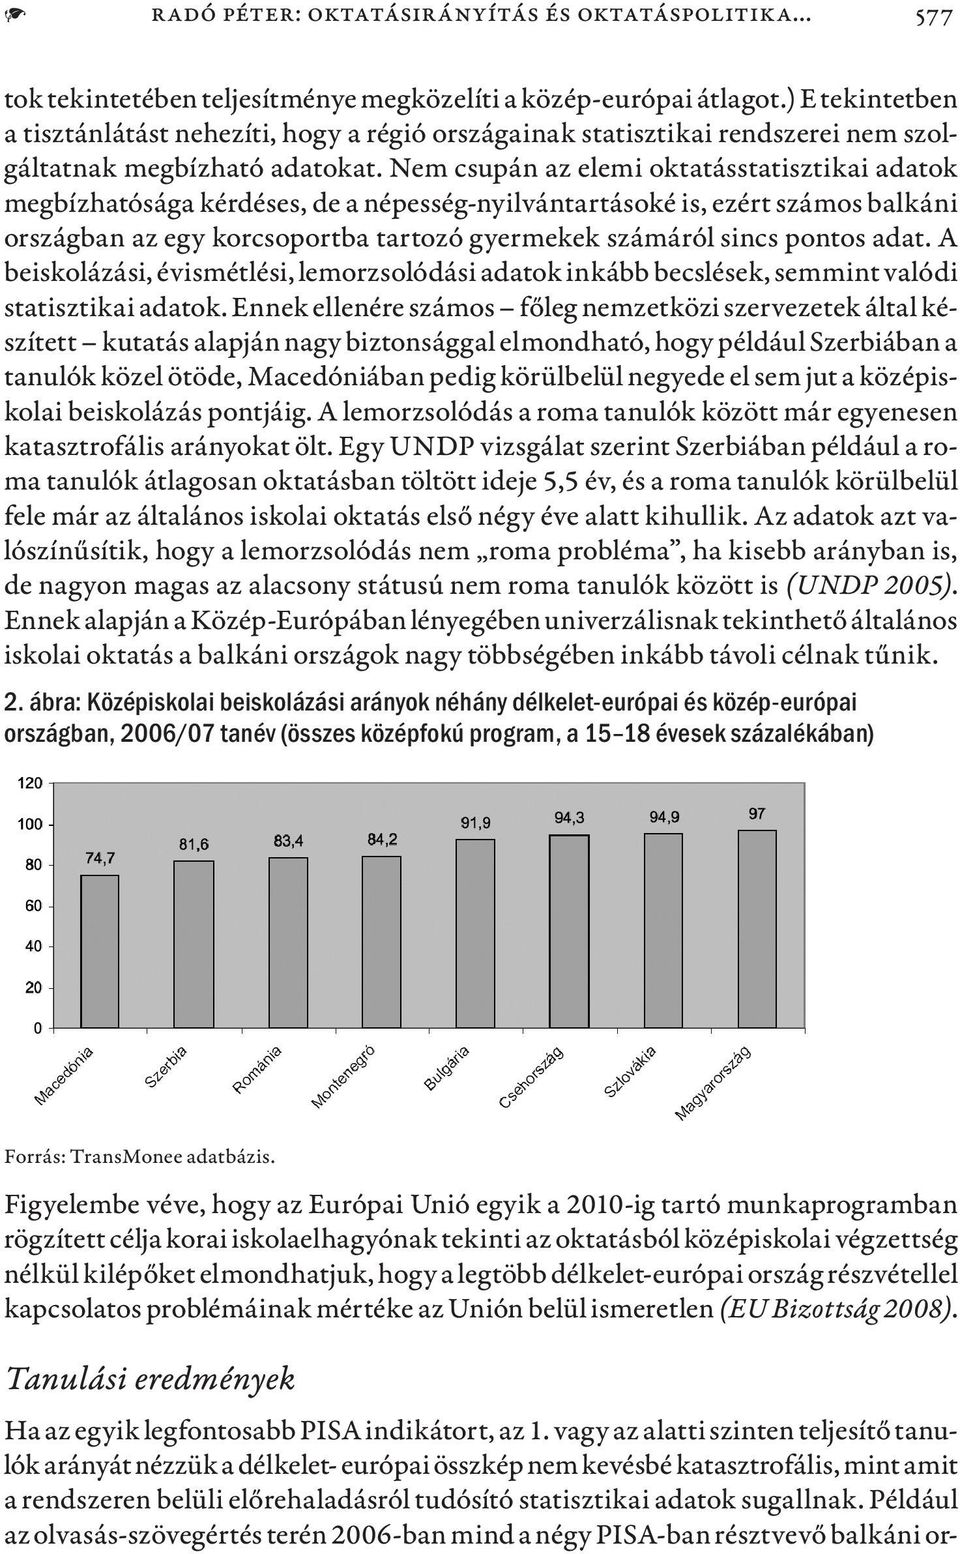 Nem csupán az elemi oktatásstatisztikai adatok megbízhatósága kérdéses, de a népesség-nyilvántartásoké is, ezért számos balkáni országban az egy korcsoportba tartozó gyermekek számáról sincs pontos